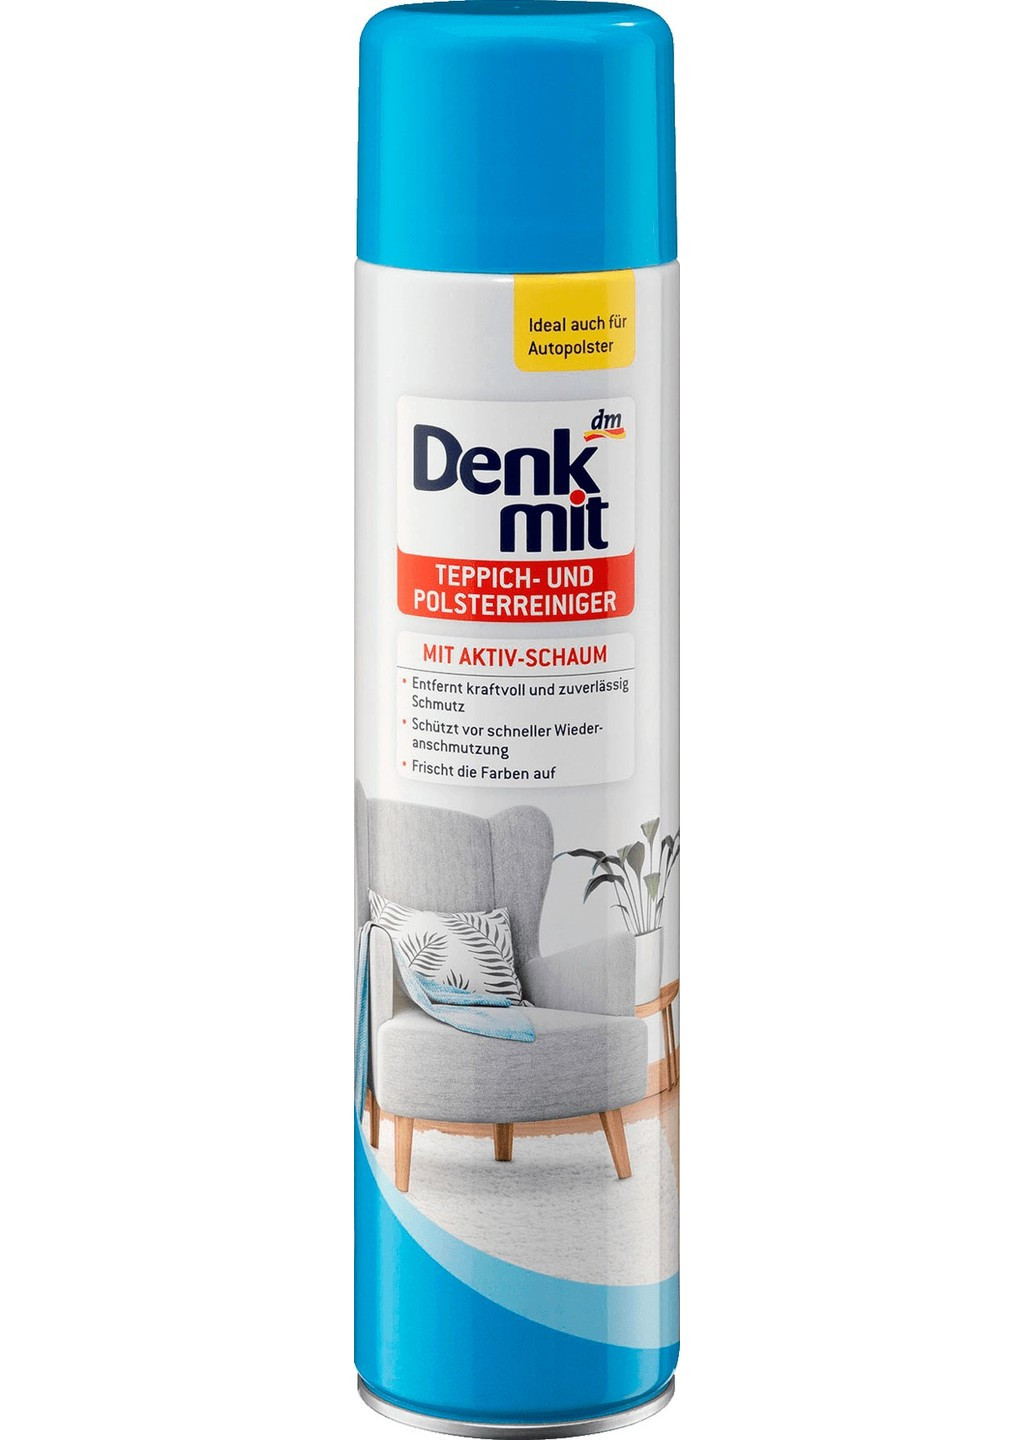 Чистящее средство для ковров и мягкой мебели mit Aktiv-Schaum, 600 мл. Denkmit (273438957)